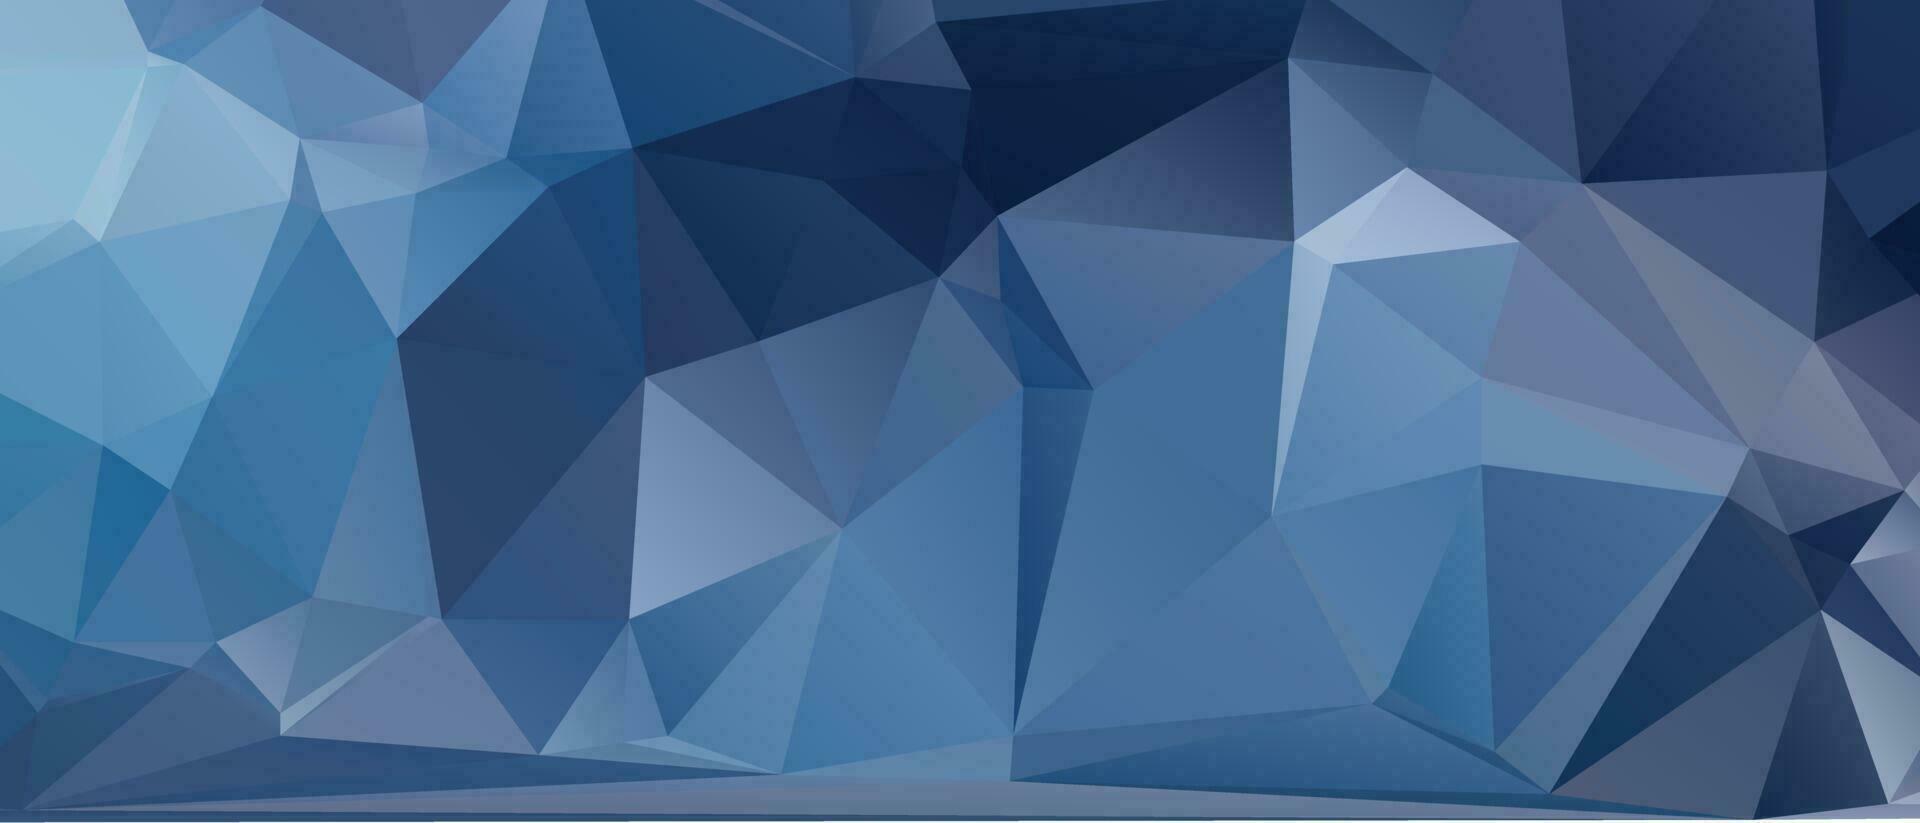 resumen color polígono antecedentes diseño, resumen geométrico origami estilo con degradado vector